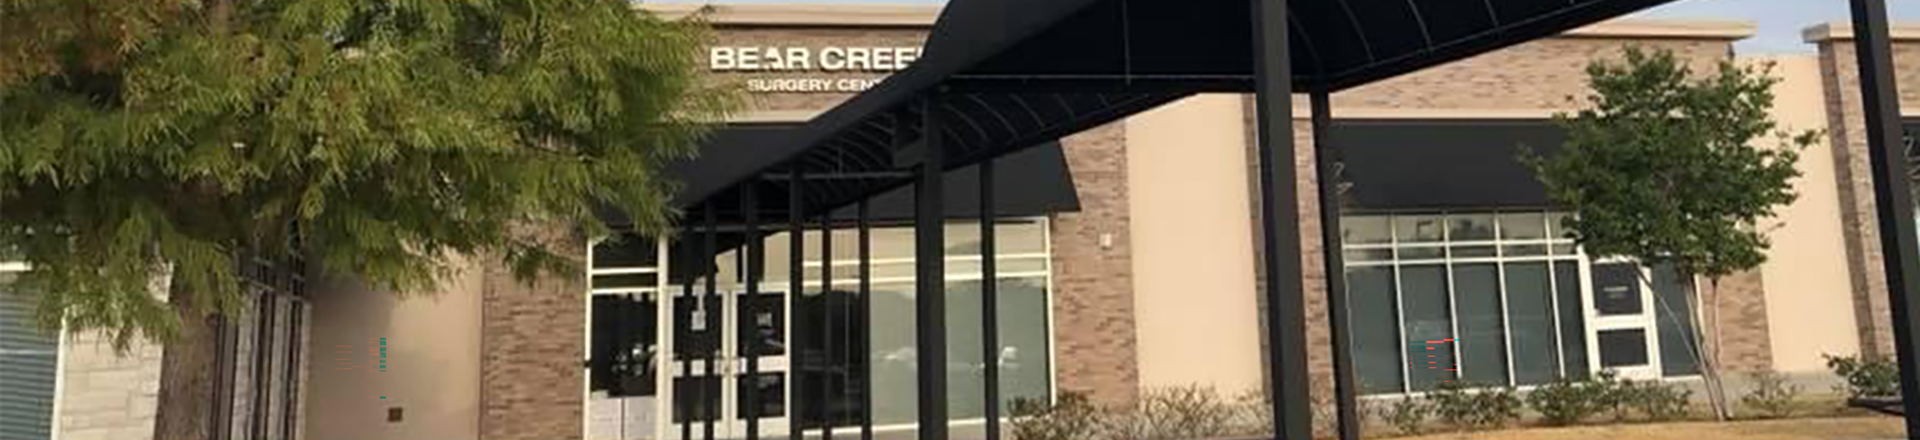 Bear Creek Surgery Center